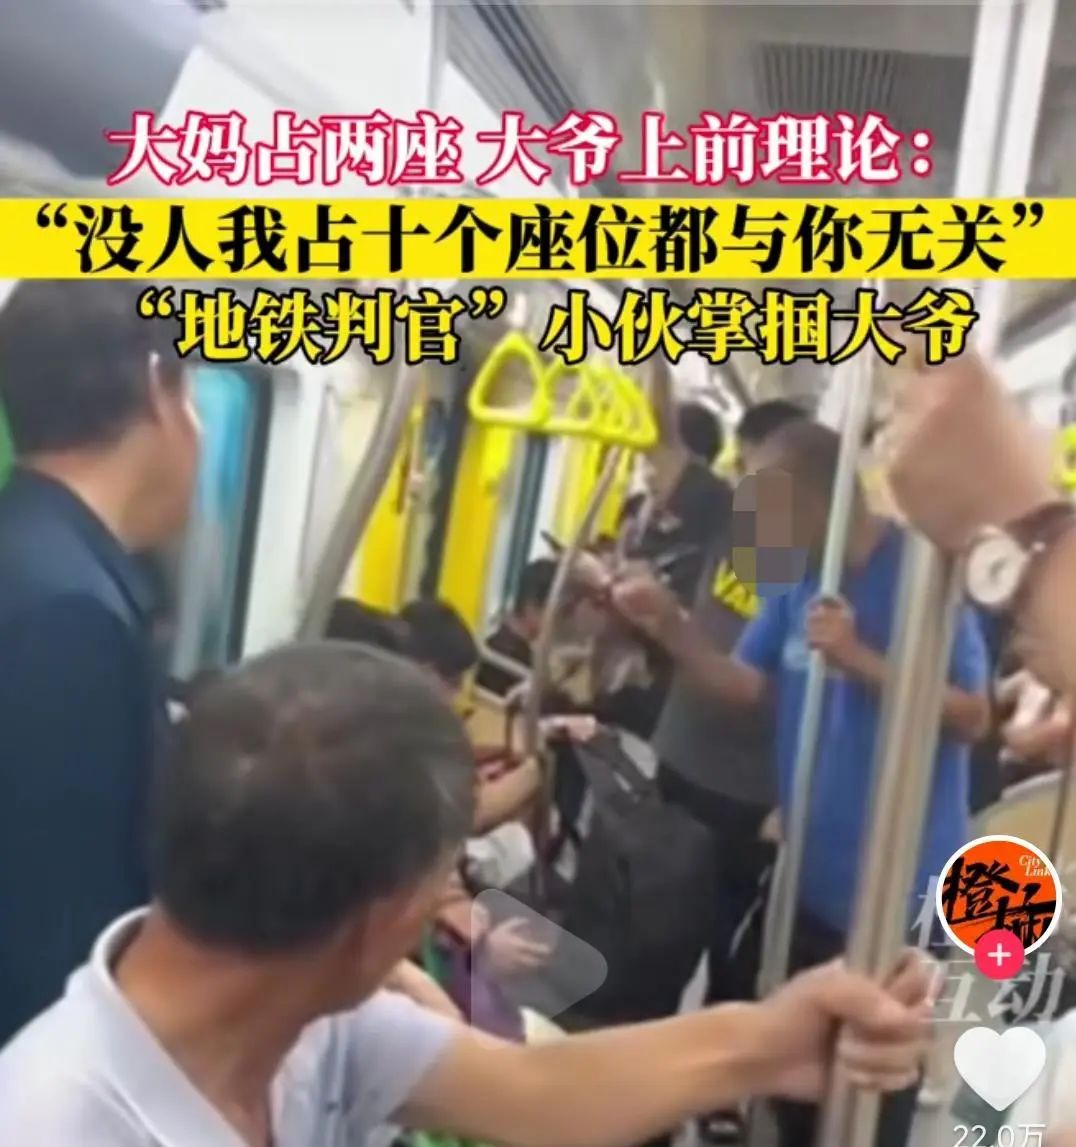 网友投稿: 今早在4号线一下遇见两个猥琐男，地铁上顶姑娘屁股